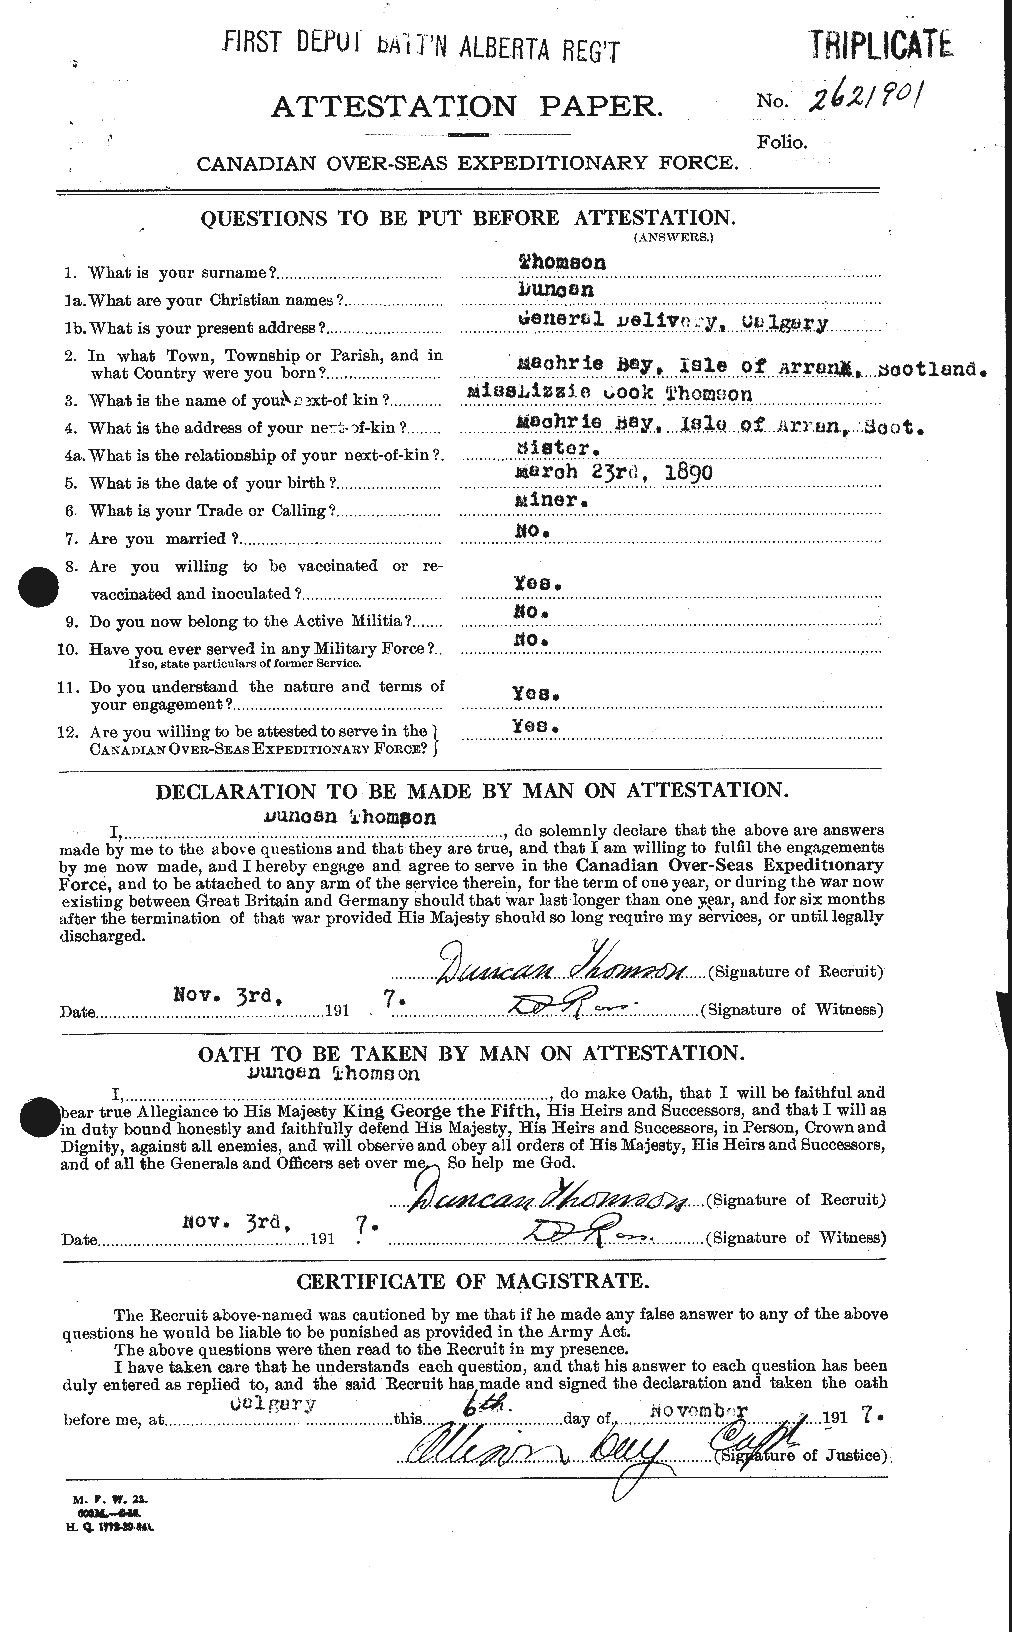 Dossiers du Personnel de la Première Guerre mondiale - CEC 633647a